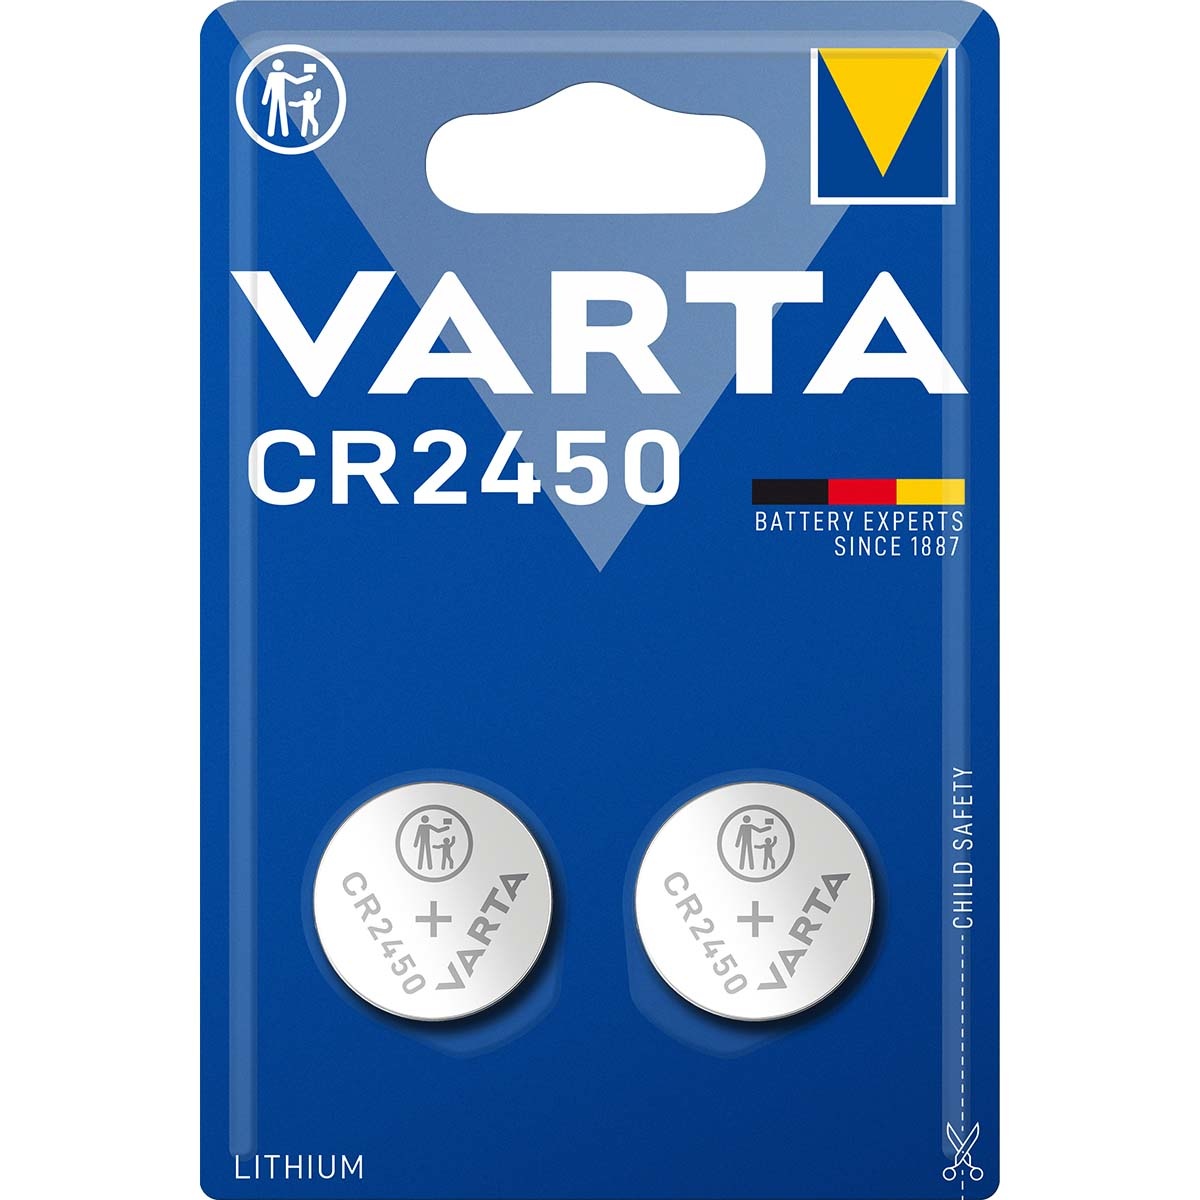 Jolly Corroderen Bestaan Varta CR2450 Lithium knoopcel batterij 2 stuks - Beterbatterij